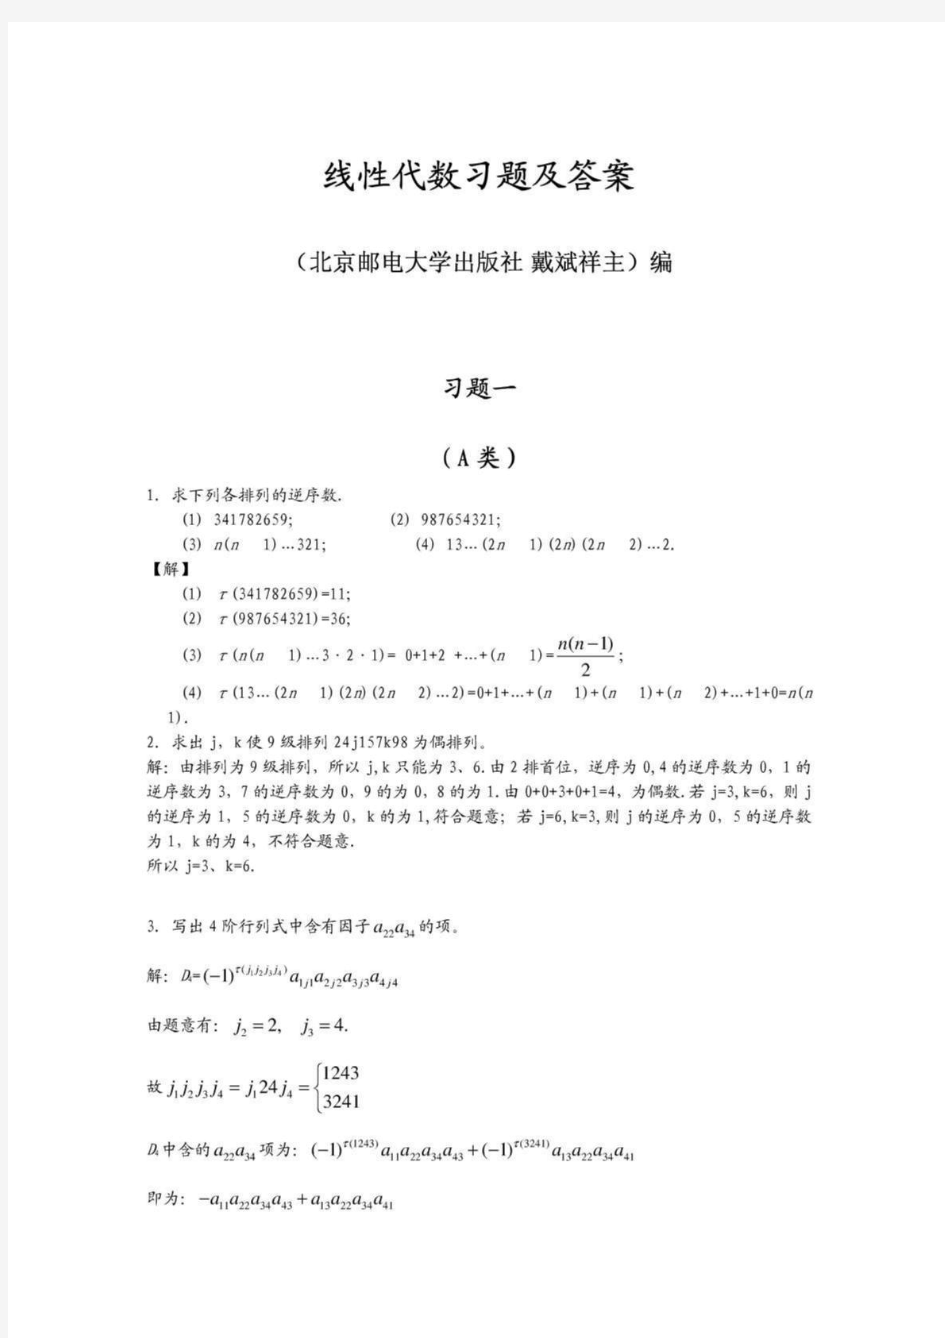 线性代数_北京邮电大学出版社(戴斌祥_主编)习题答案(1、2、3、4、5